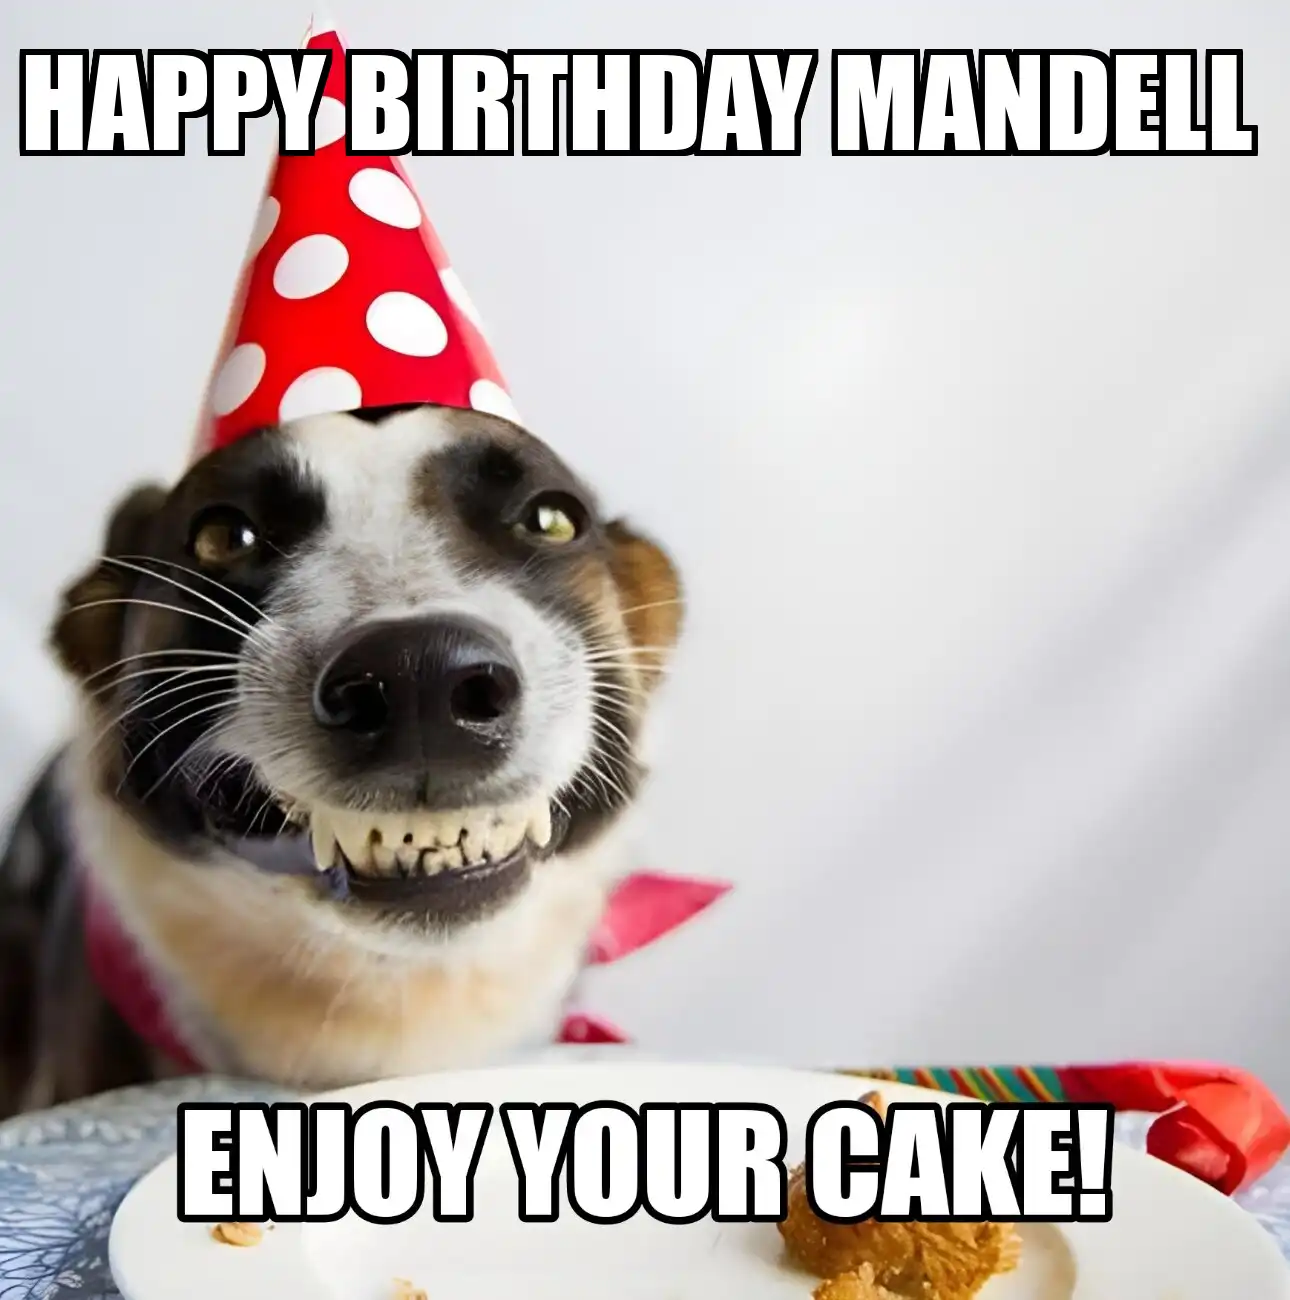 Happy Birthday Mandell Enjoy Your Cake Dog Meme